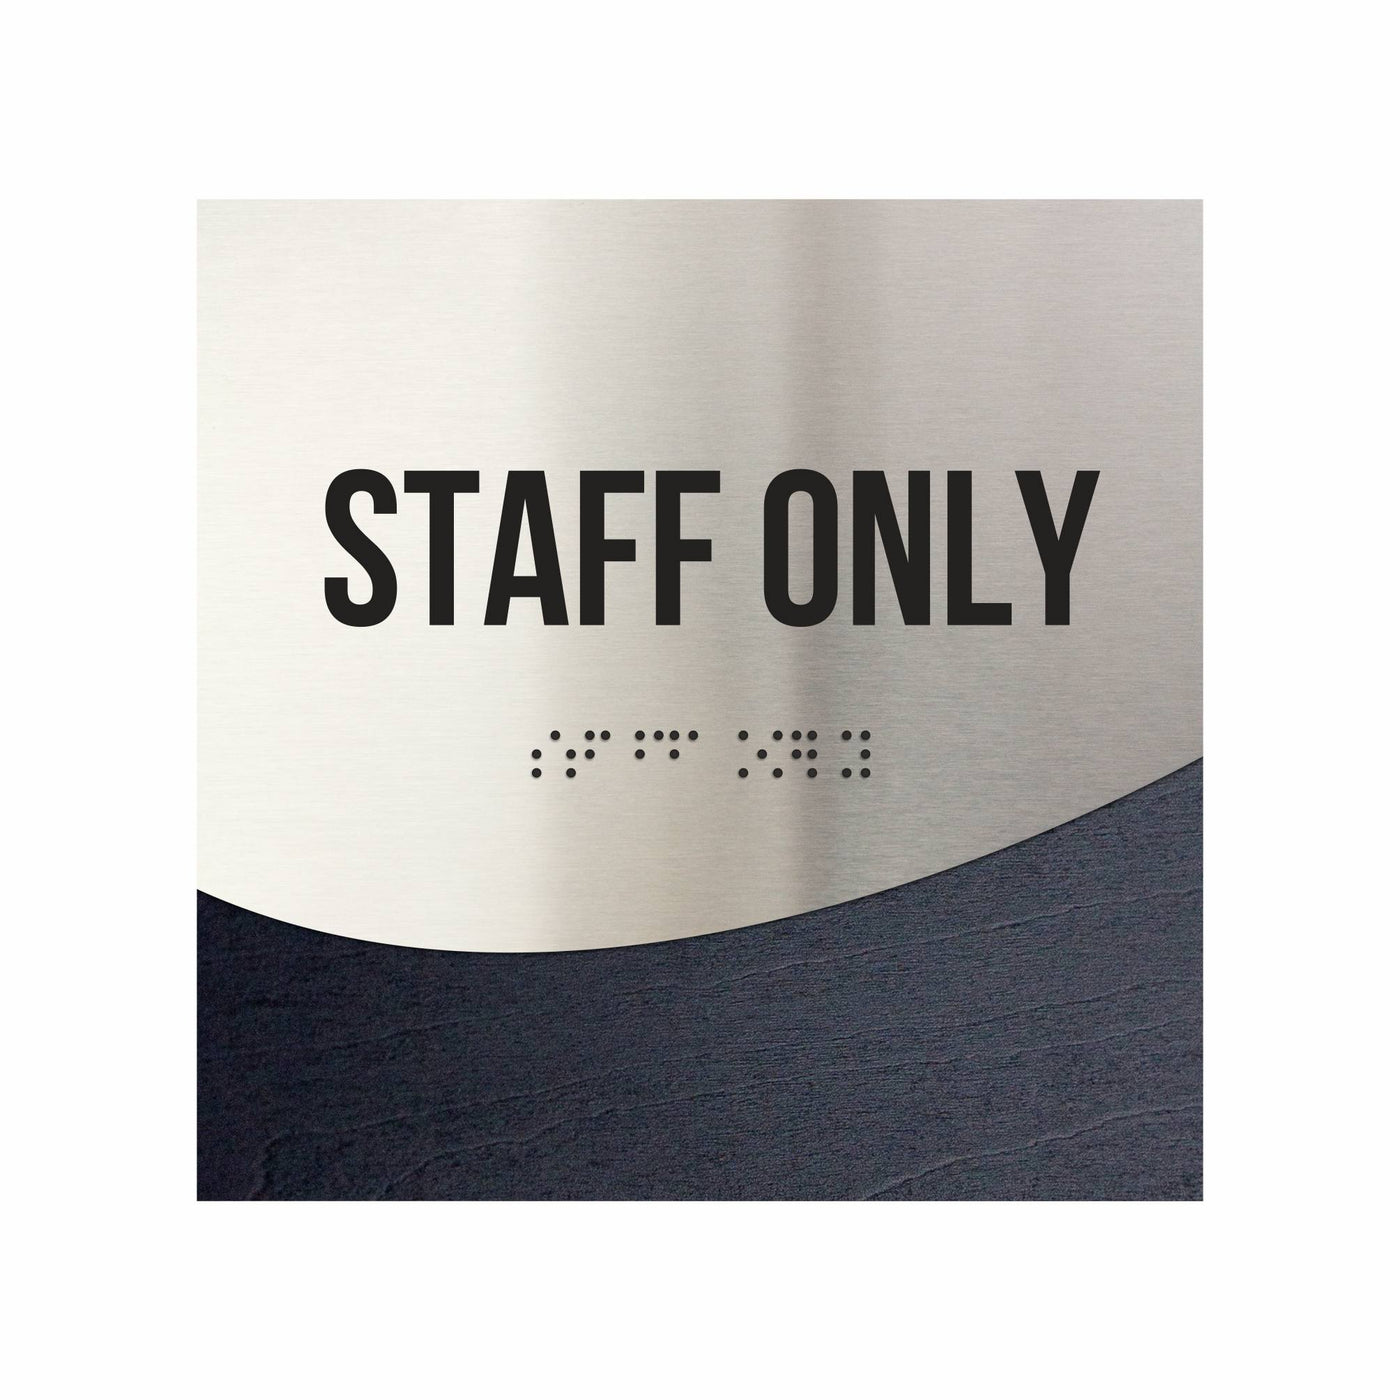 Staff Only Sign - "Jure" Design